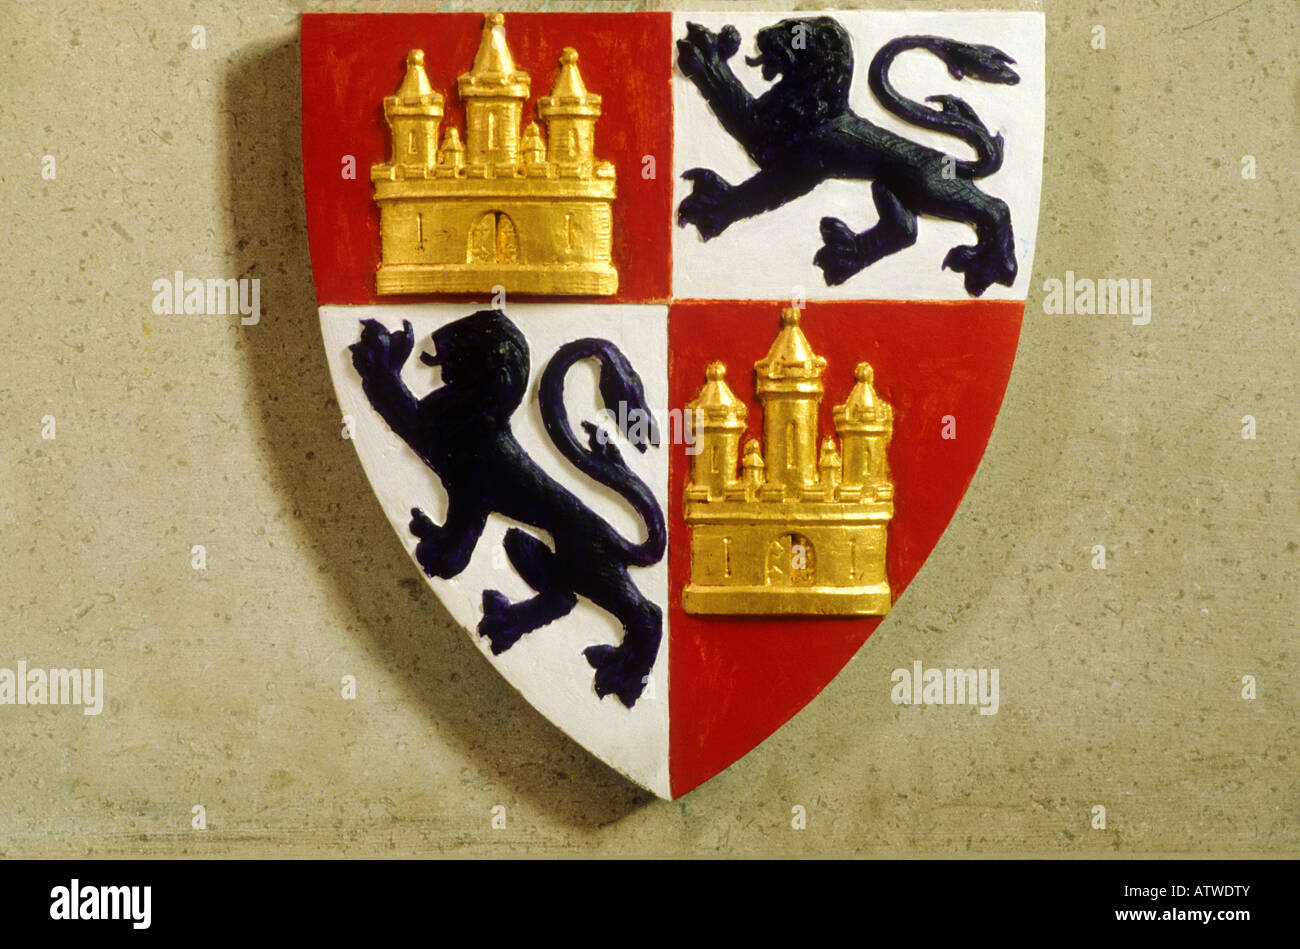 Cattedrale di Lincoln scudo stemma araldico dispositivo araldico medievale lions nero dorato castello oro Inghilterra medievale inglese Foto Stock